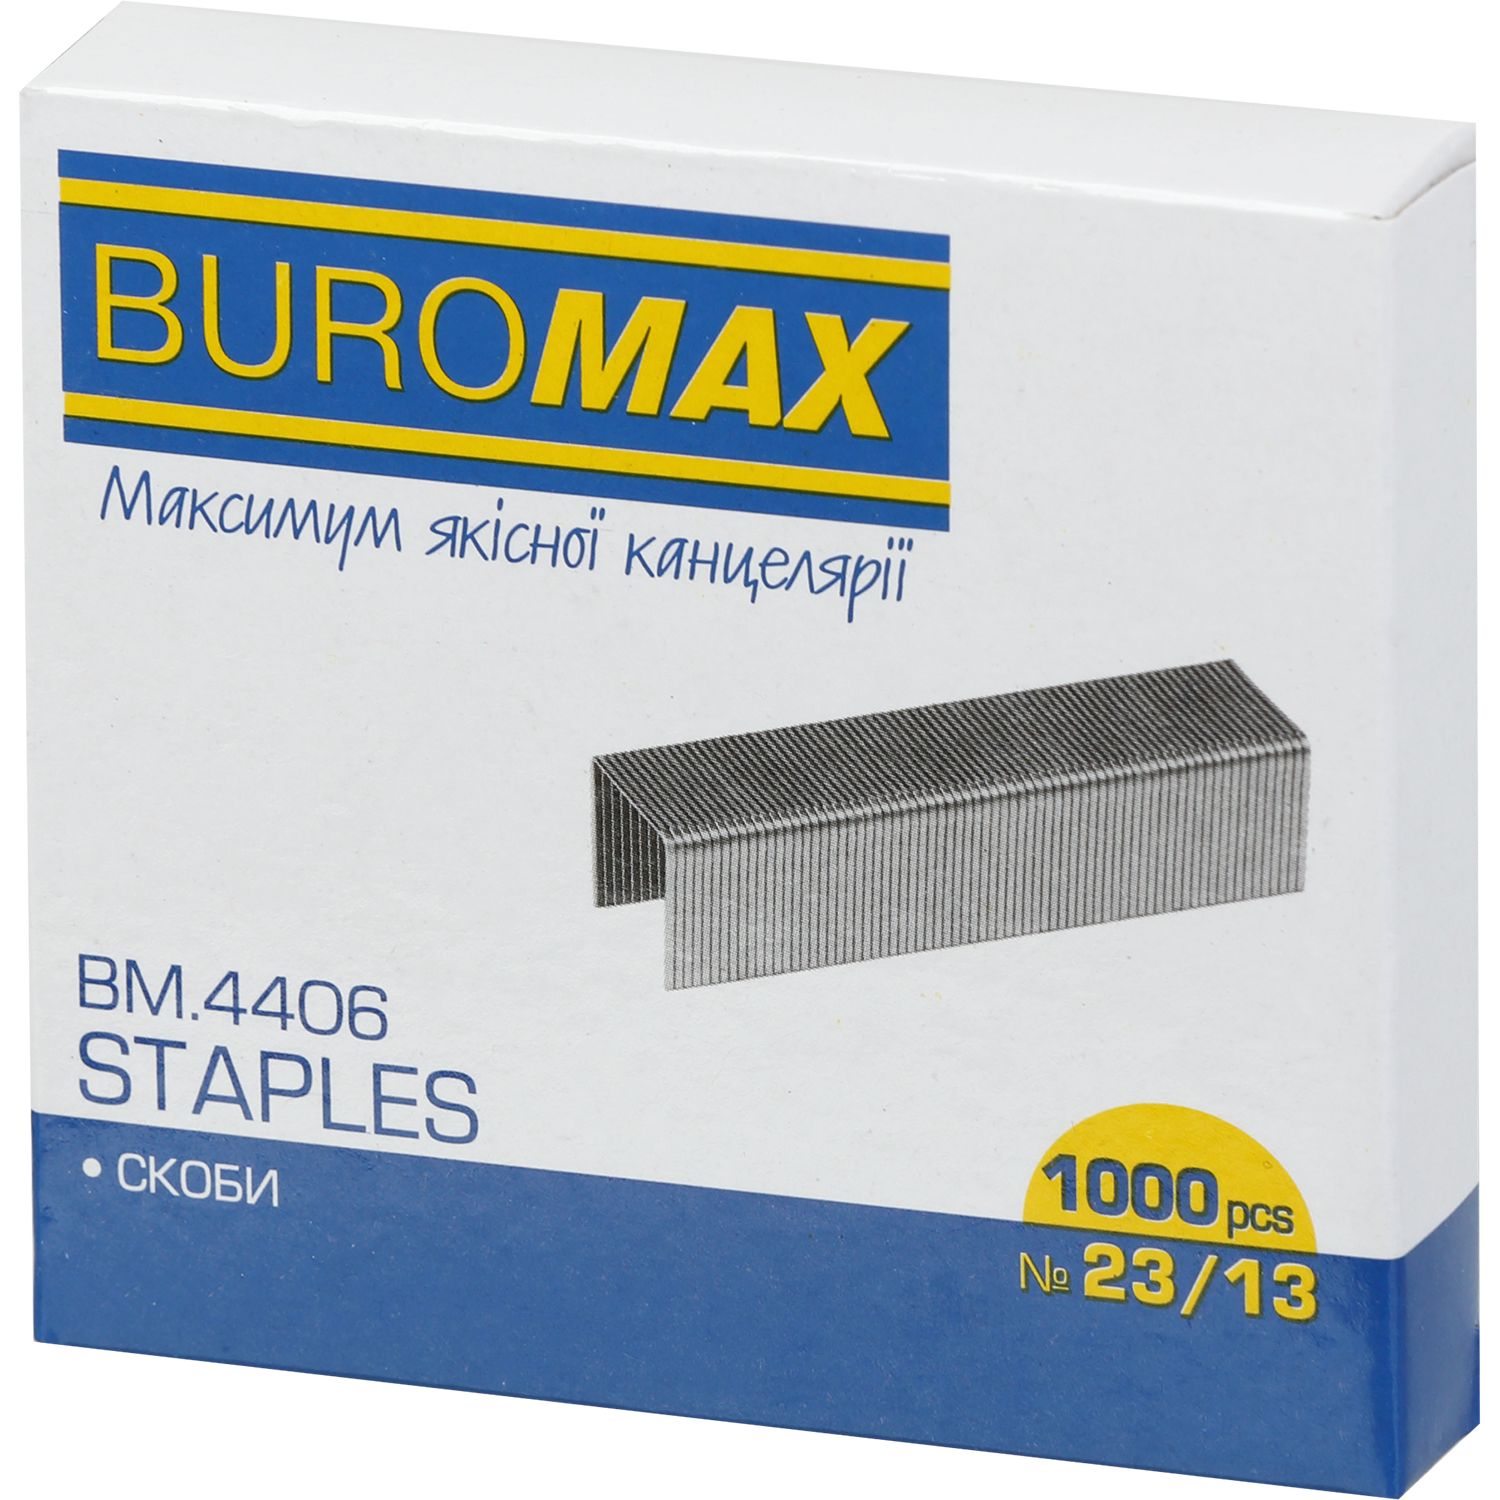 Скобы для степлеров Buromax Люкс №23/13 1000 шт. (BM.4406) - фото 1